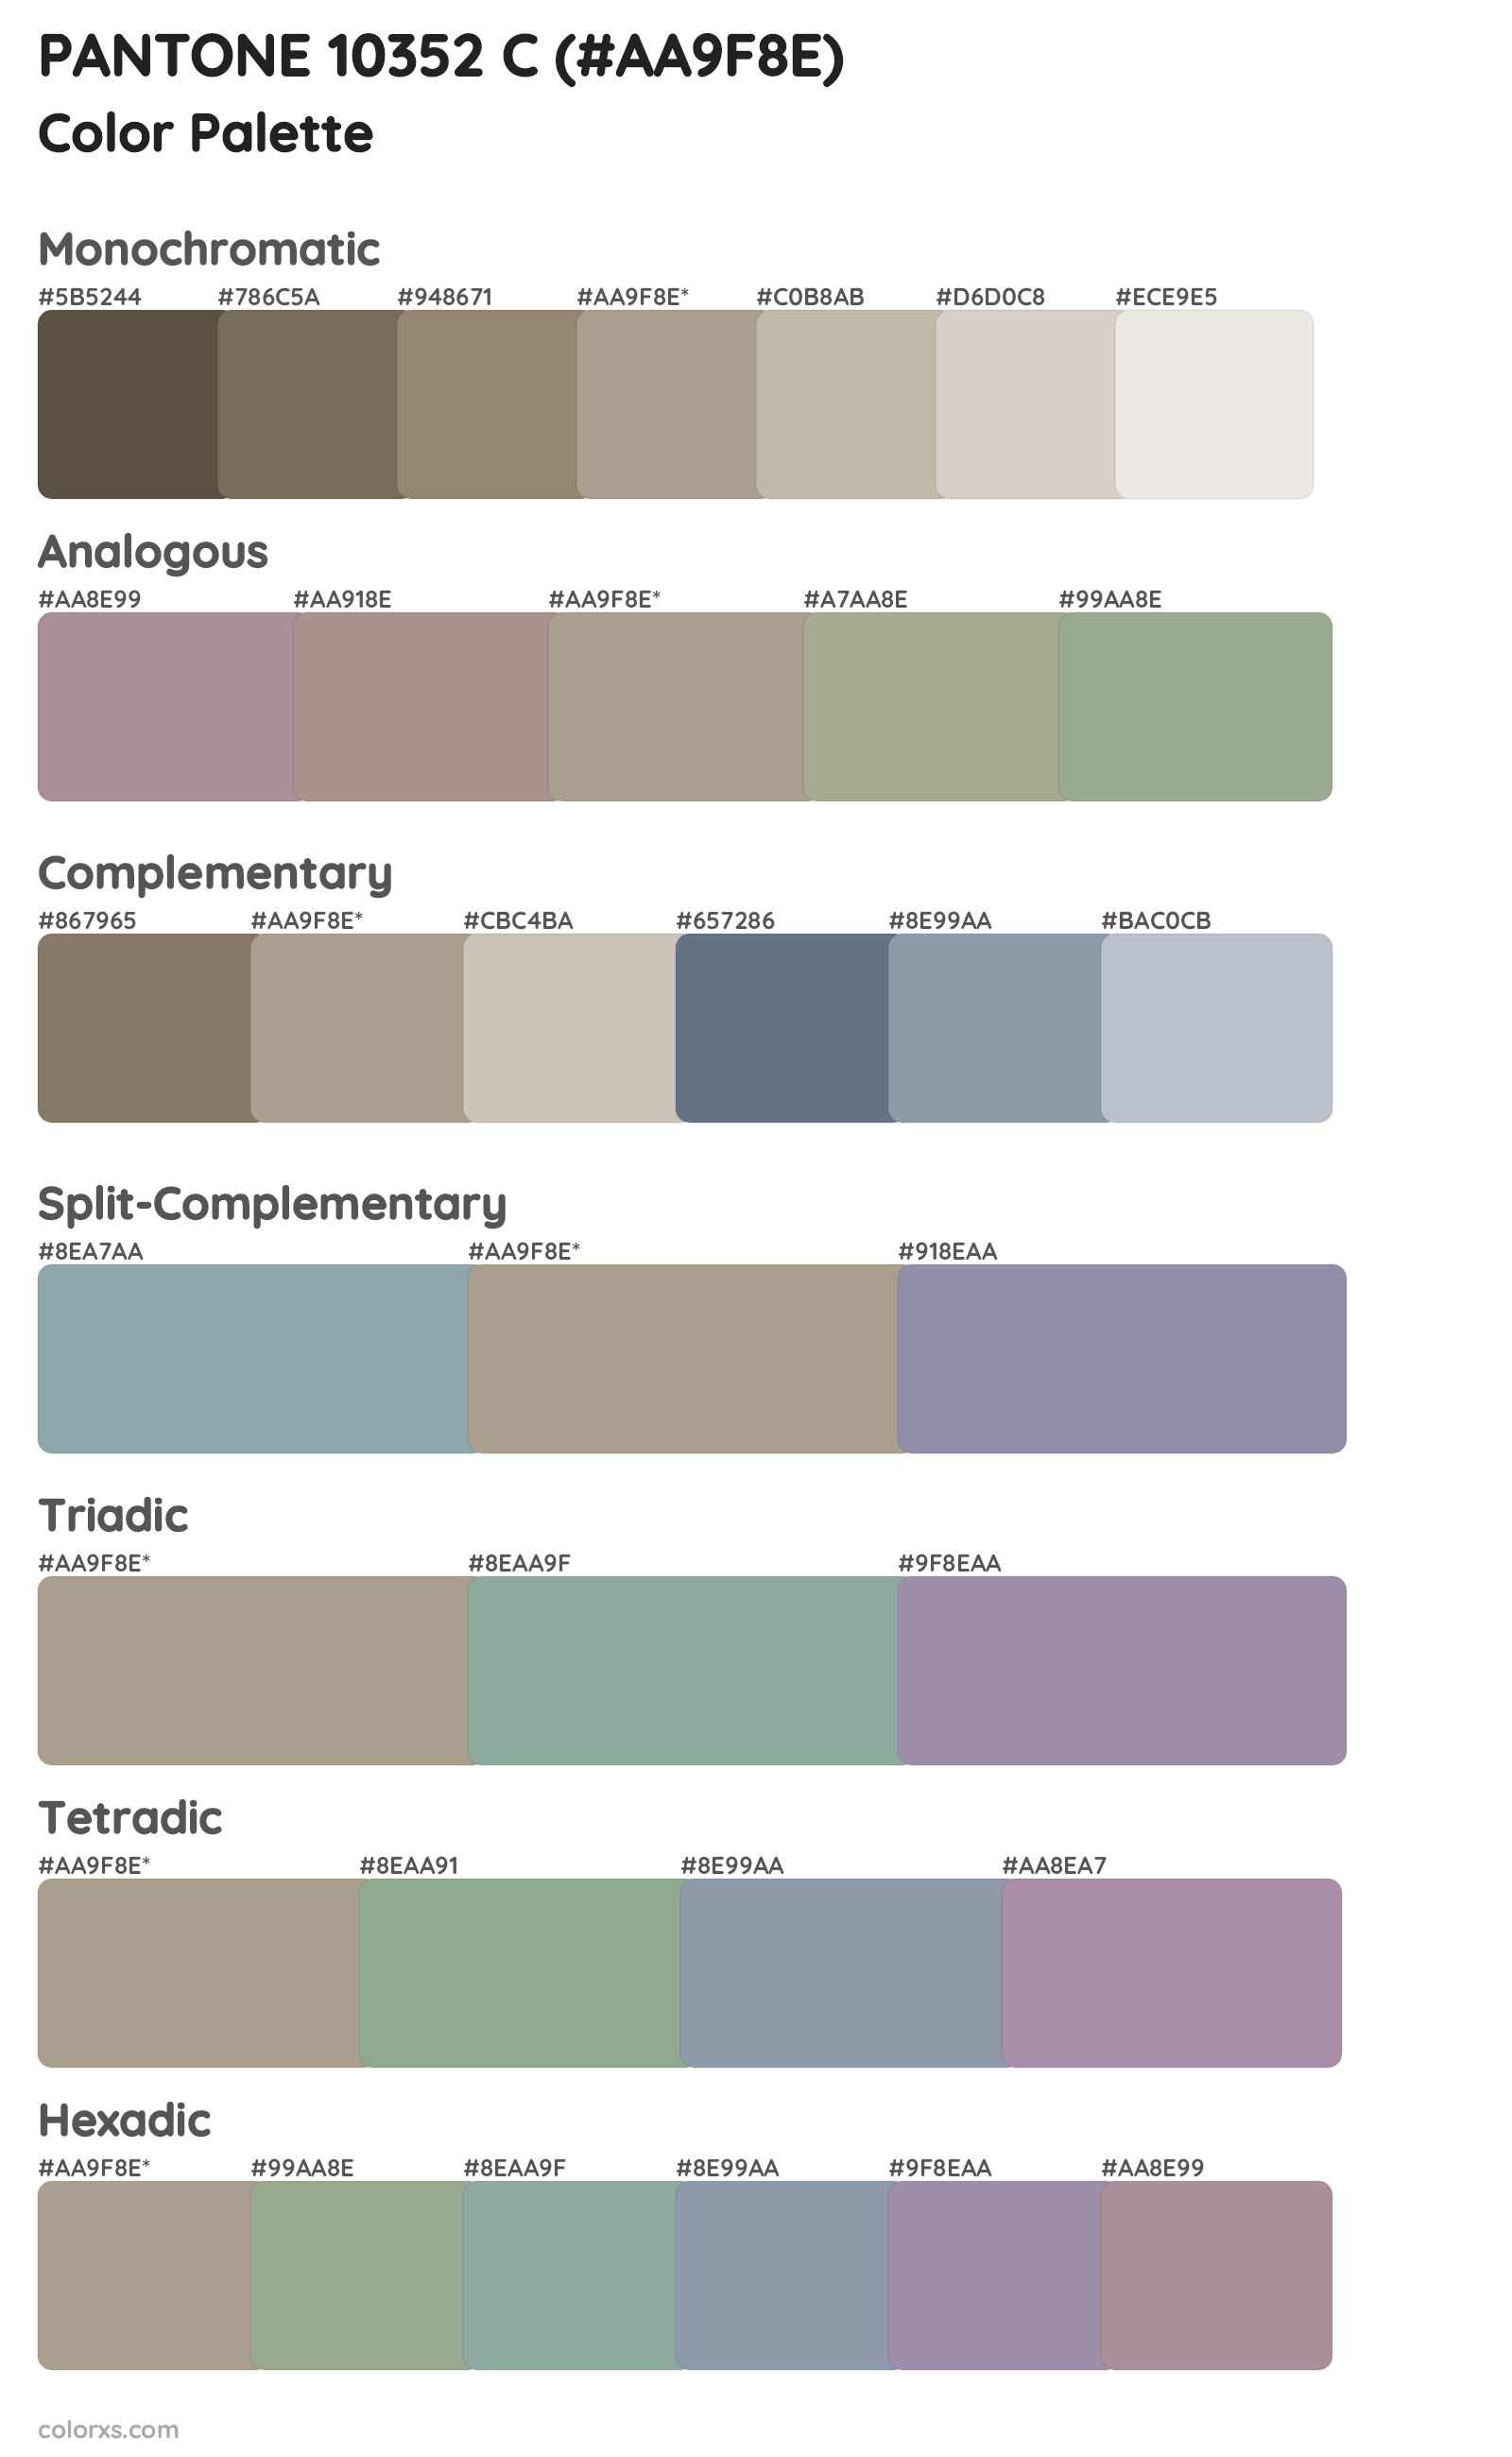 PANTONE 10352 C Color Scheme Palettes